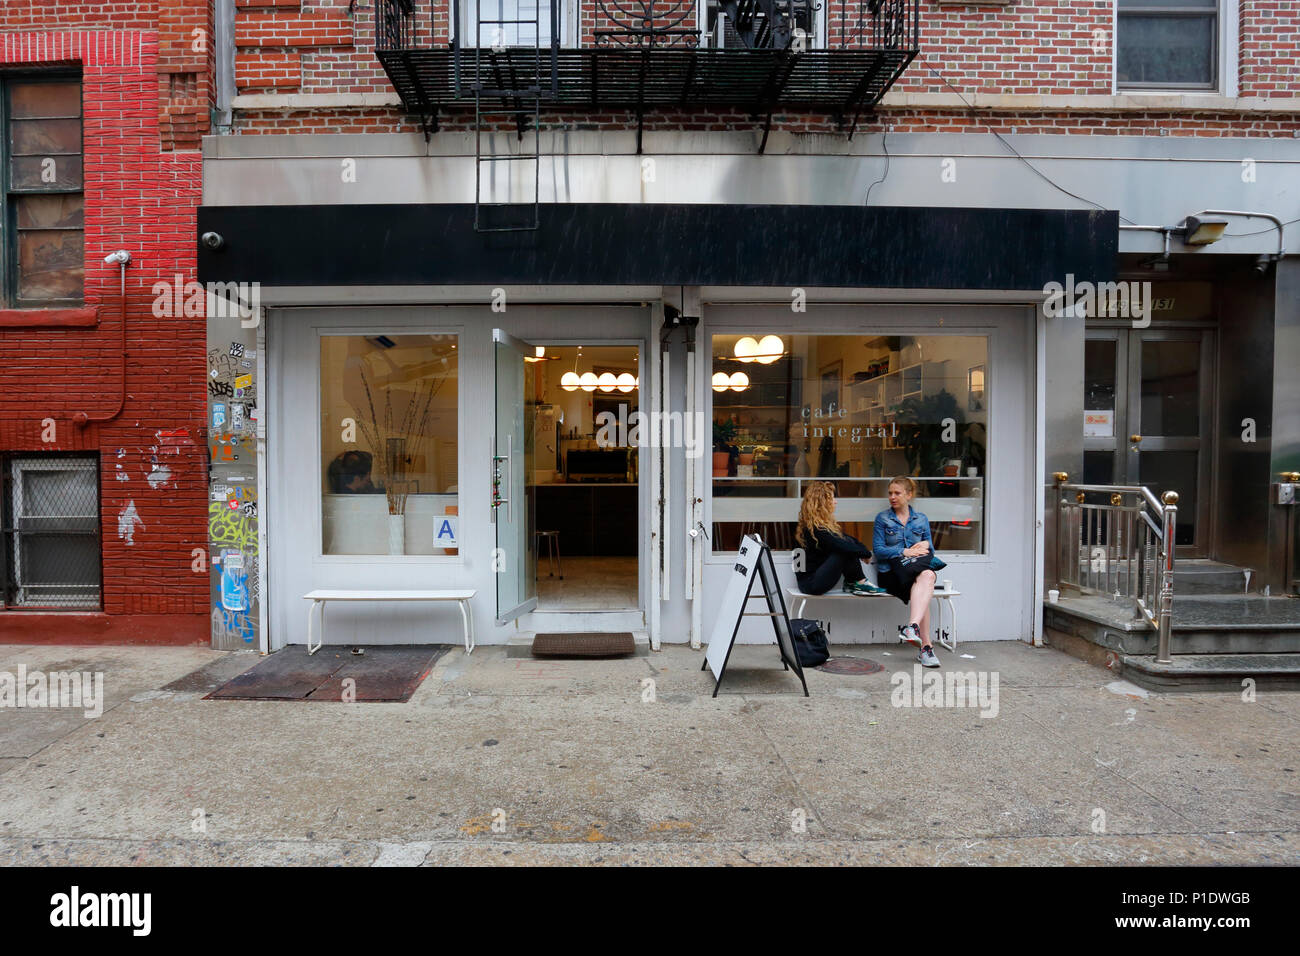 Cafe partie intégrante, 149 Elizabeth St, New York, NY. devanture extérieure d'un café-restaurant dans le quartier de Nolita à Manhattan. Banque D'Images